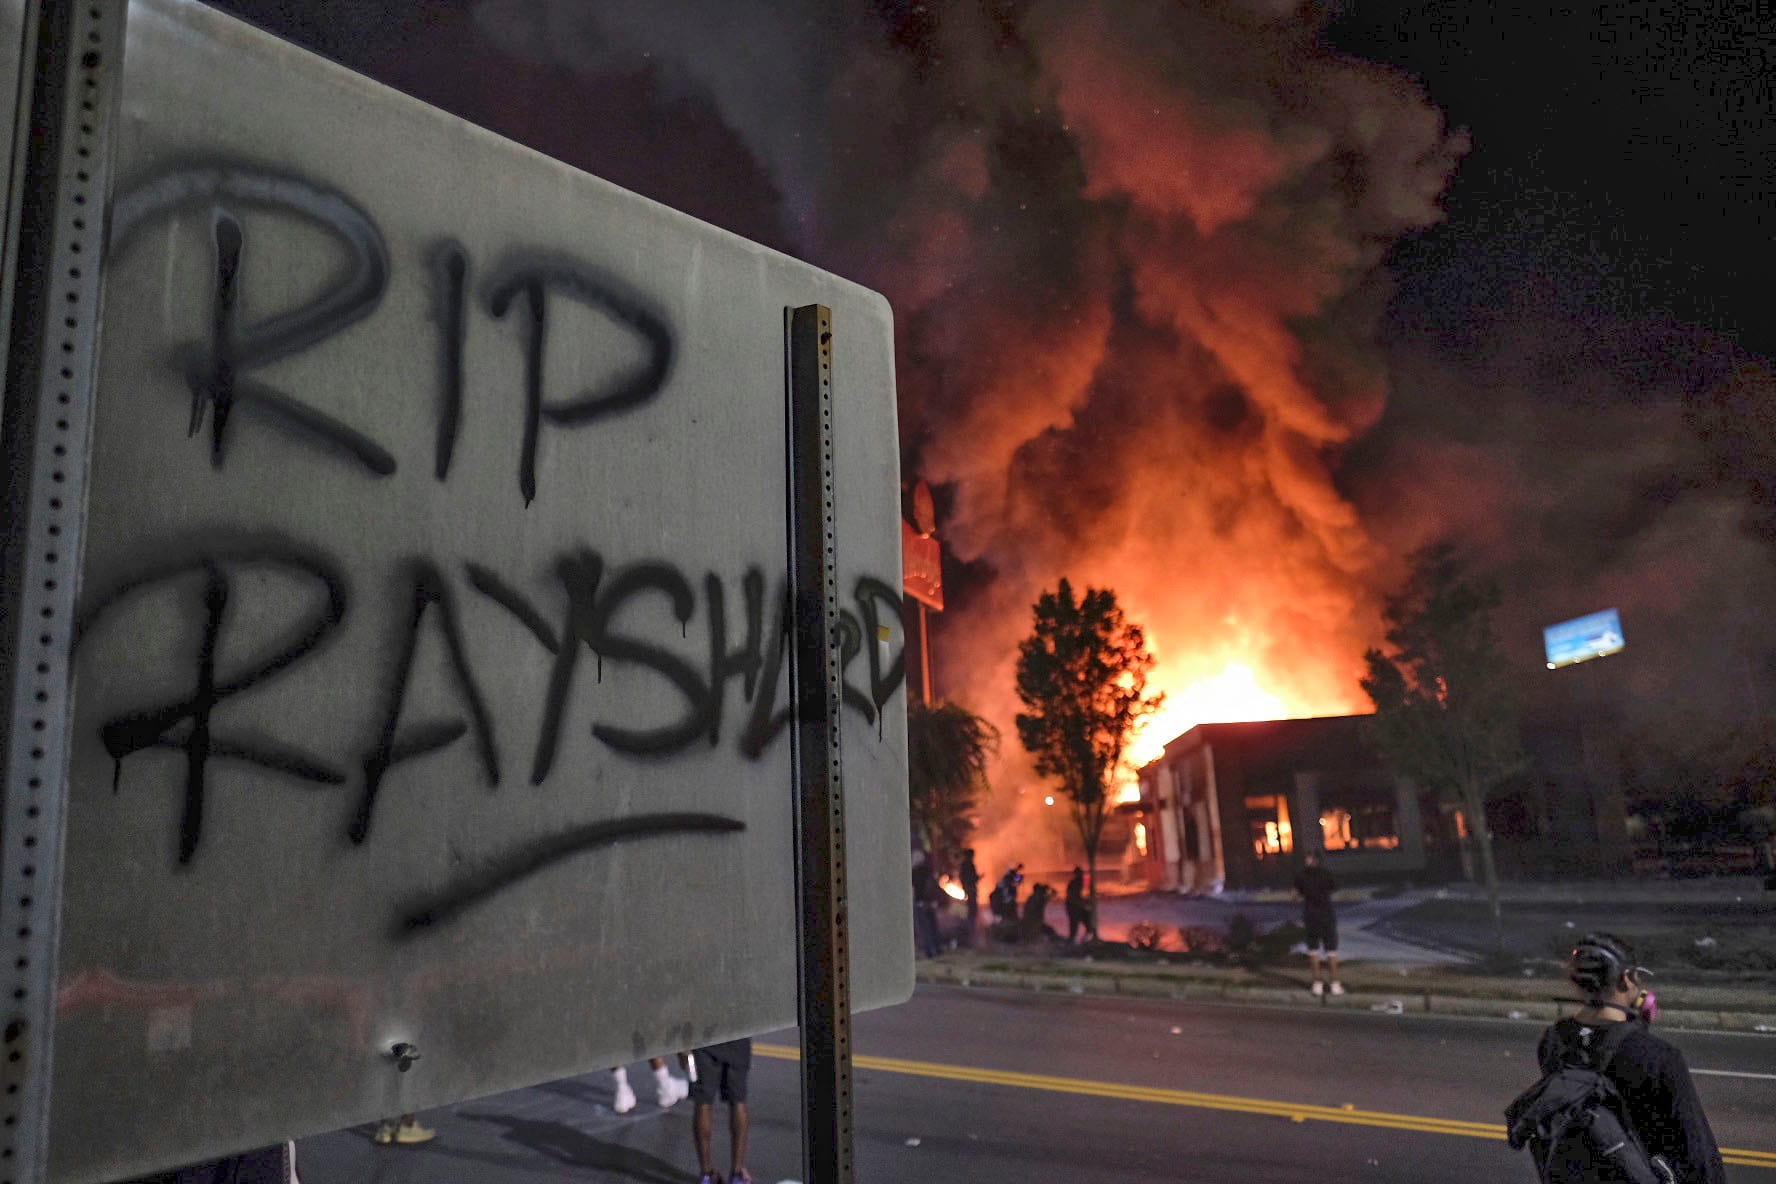 "RIP Rayshard" steht auf einem Schild, während im Hintergrund ein "Wendy's"-Restaurant brennt.